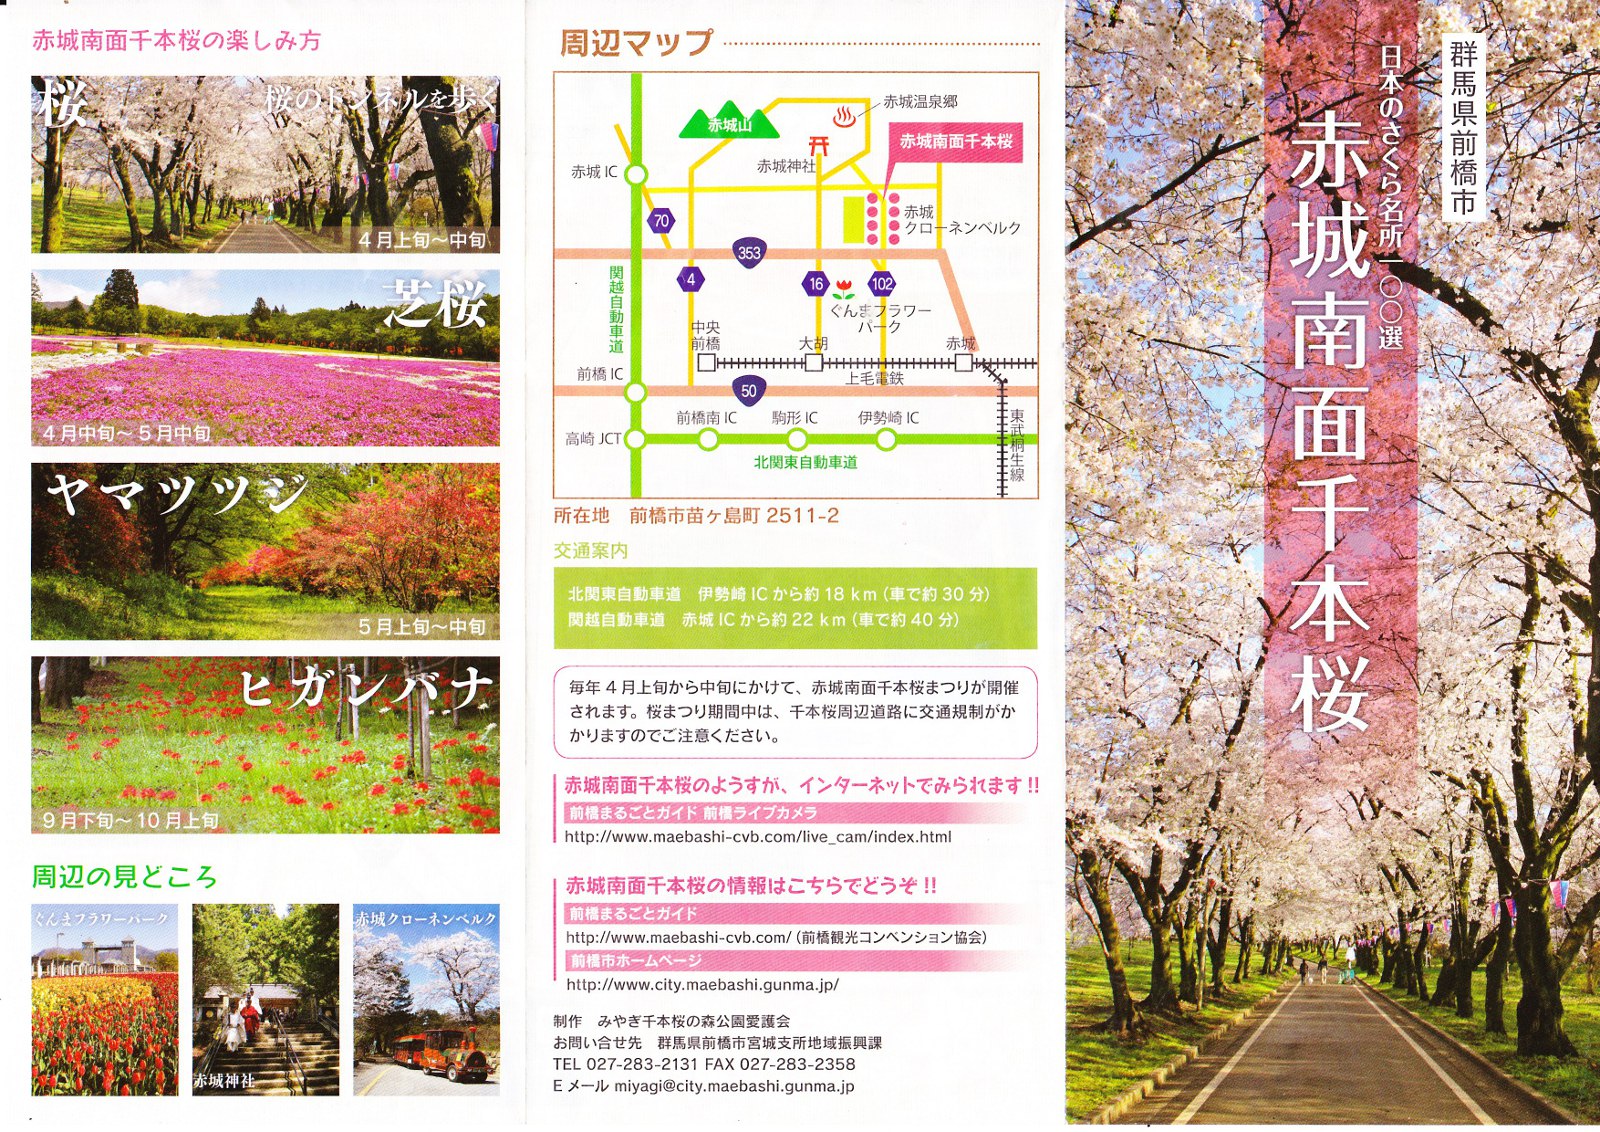 赤城南面千本桜のパンフレット